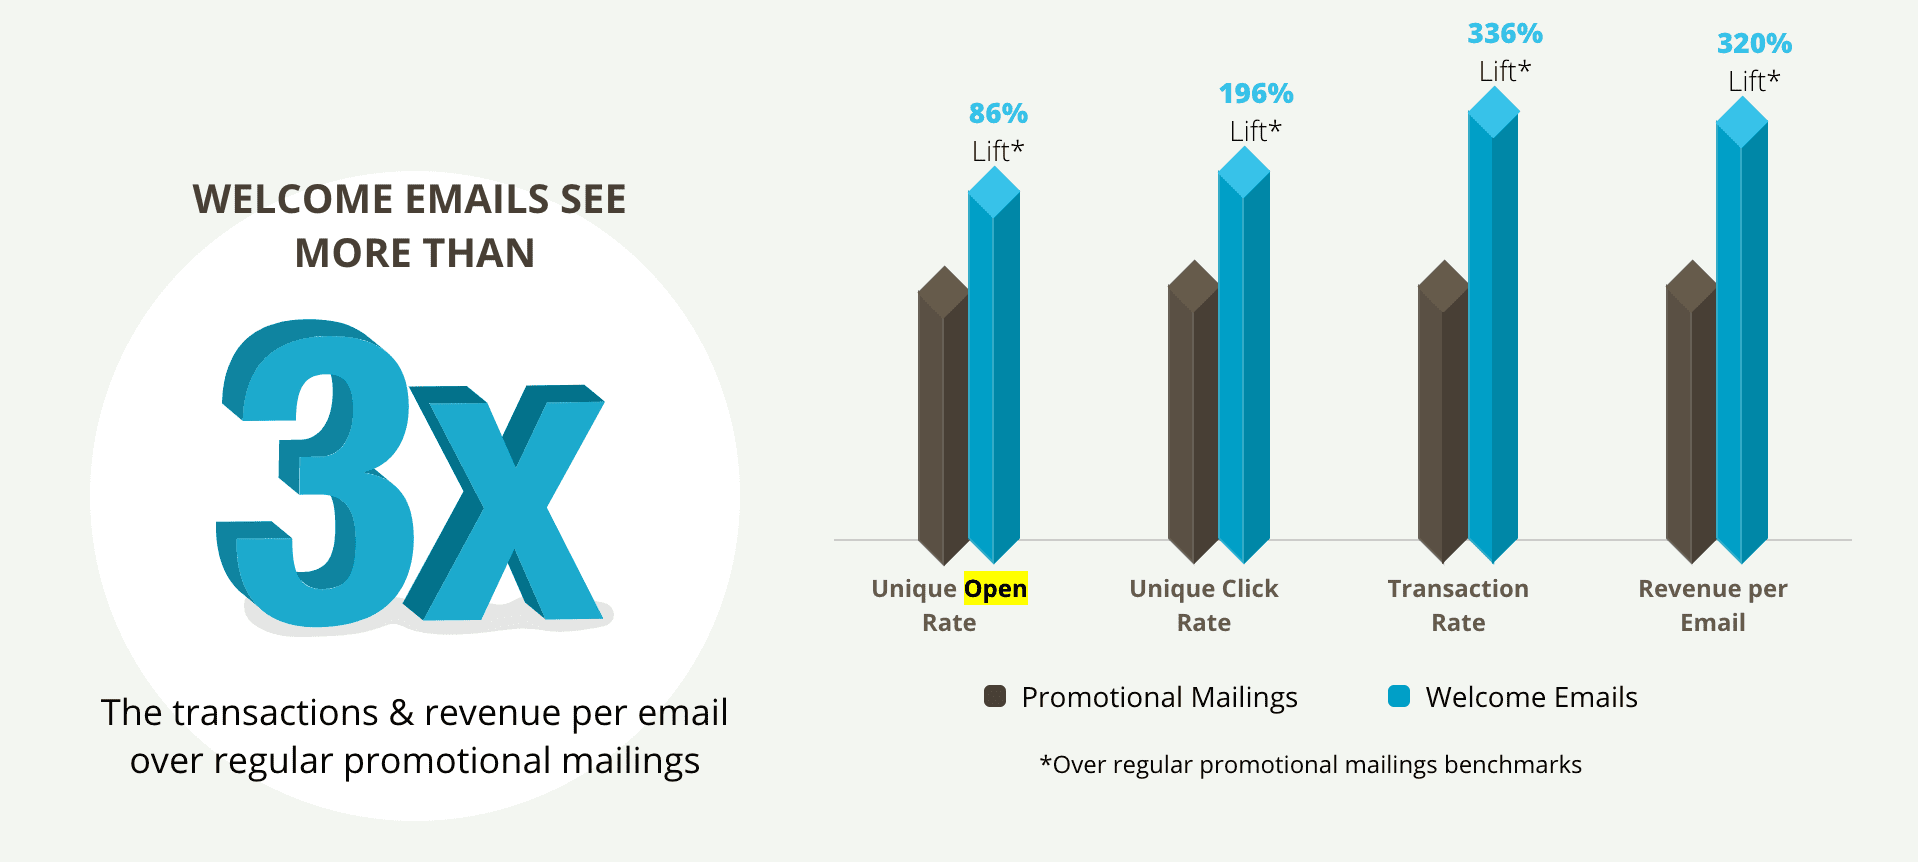 Datos sobre los emails de bienvenida - Inbox Army